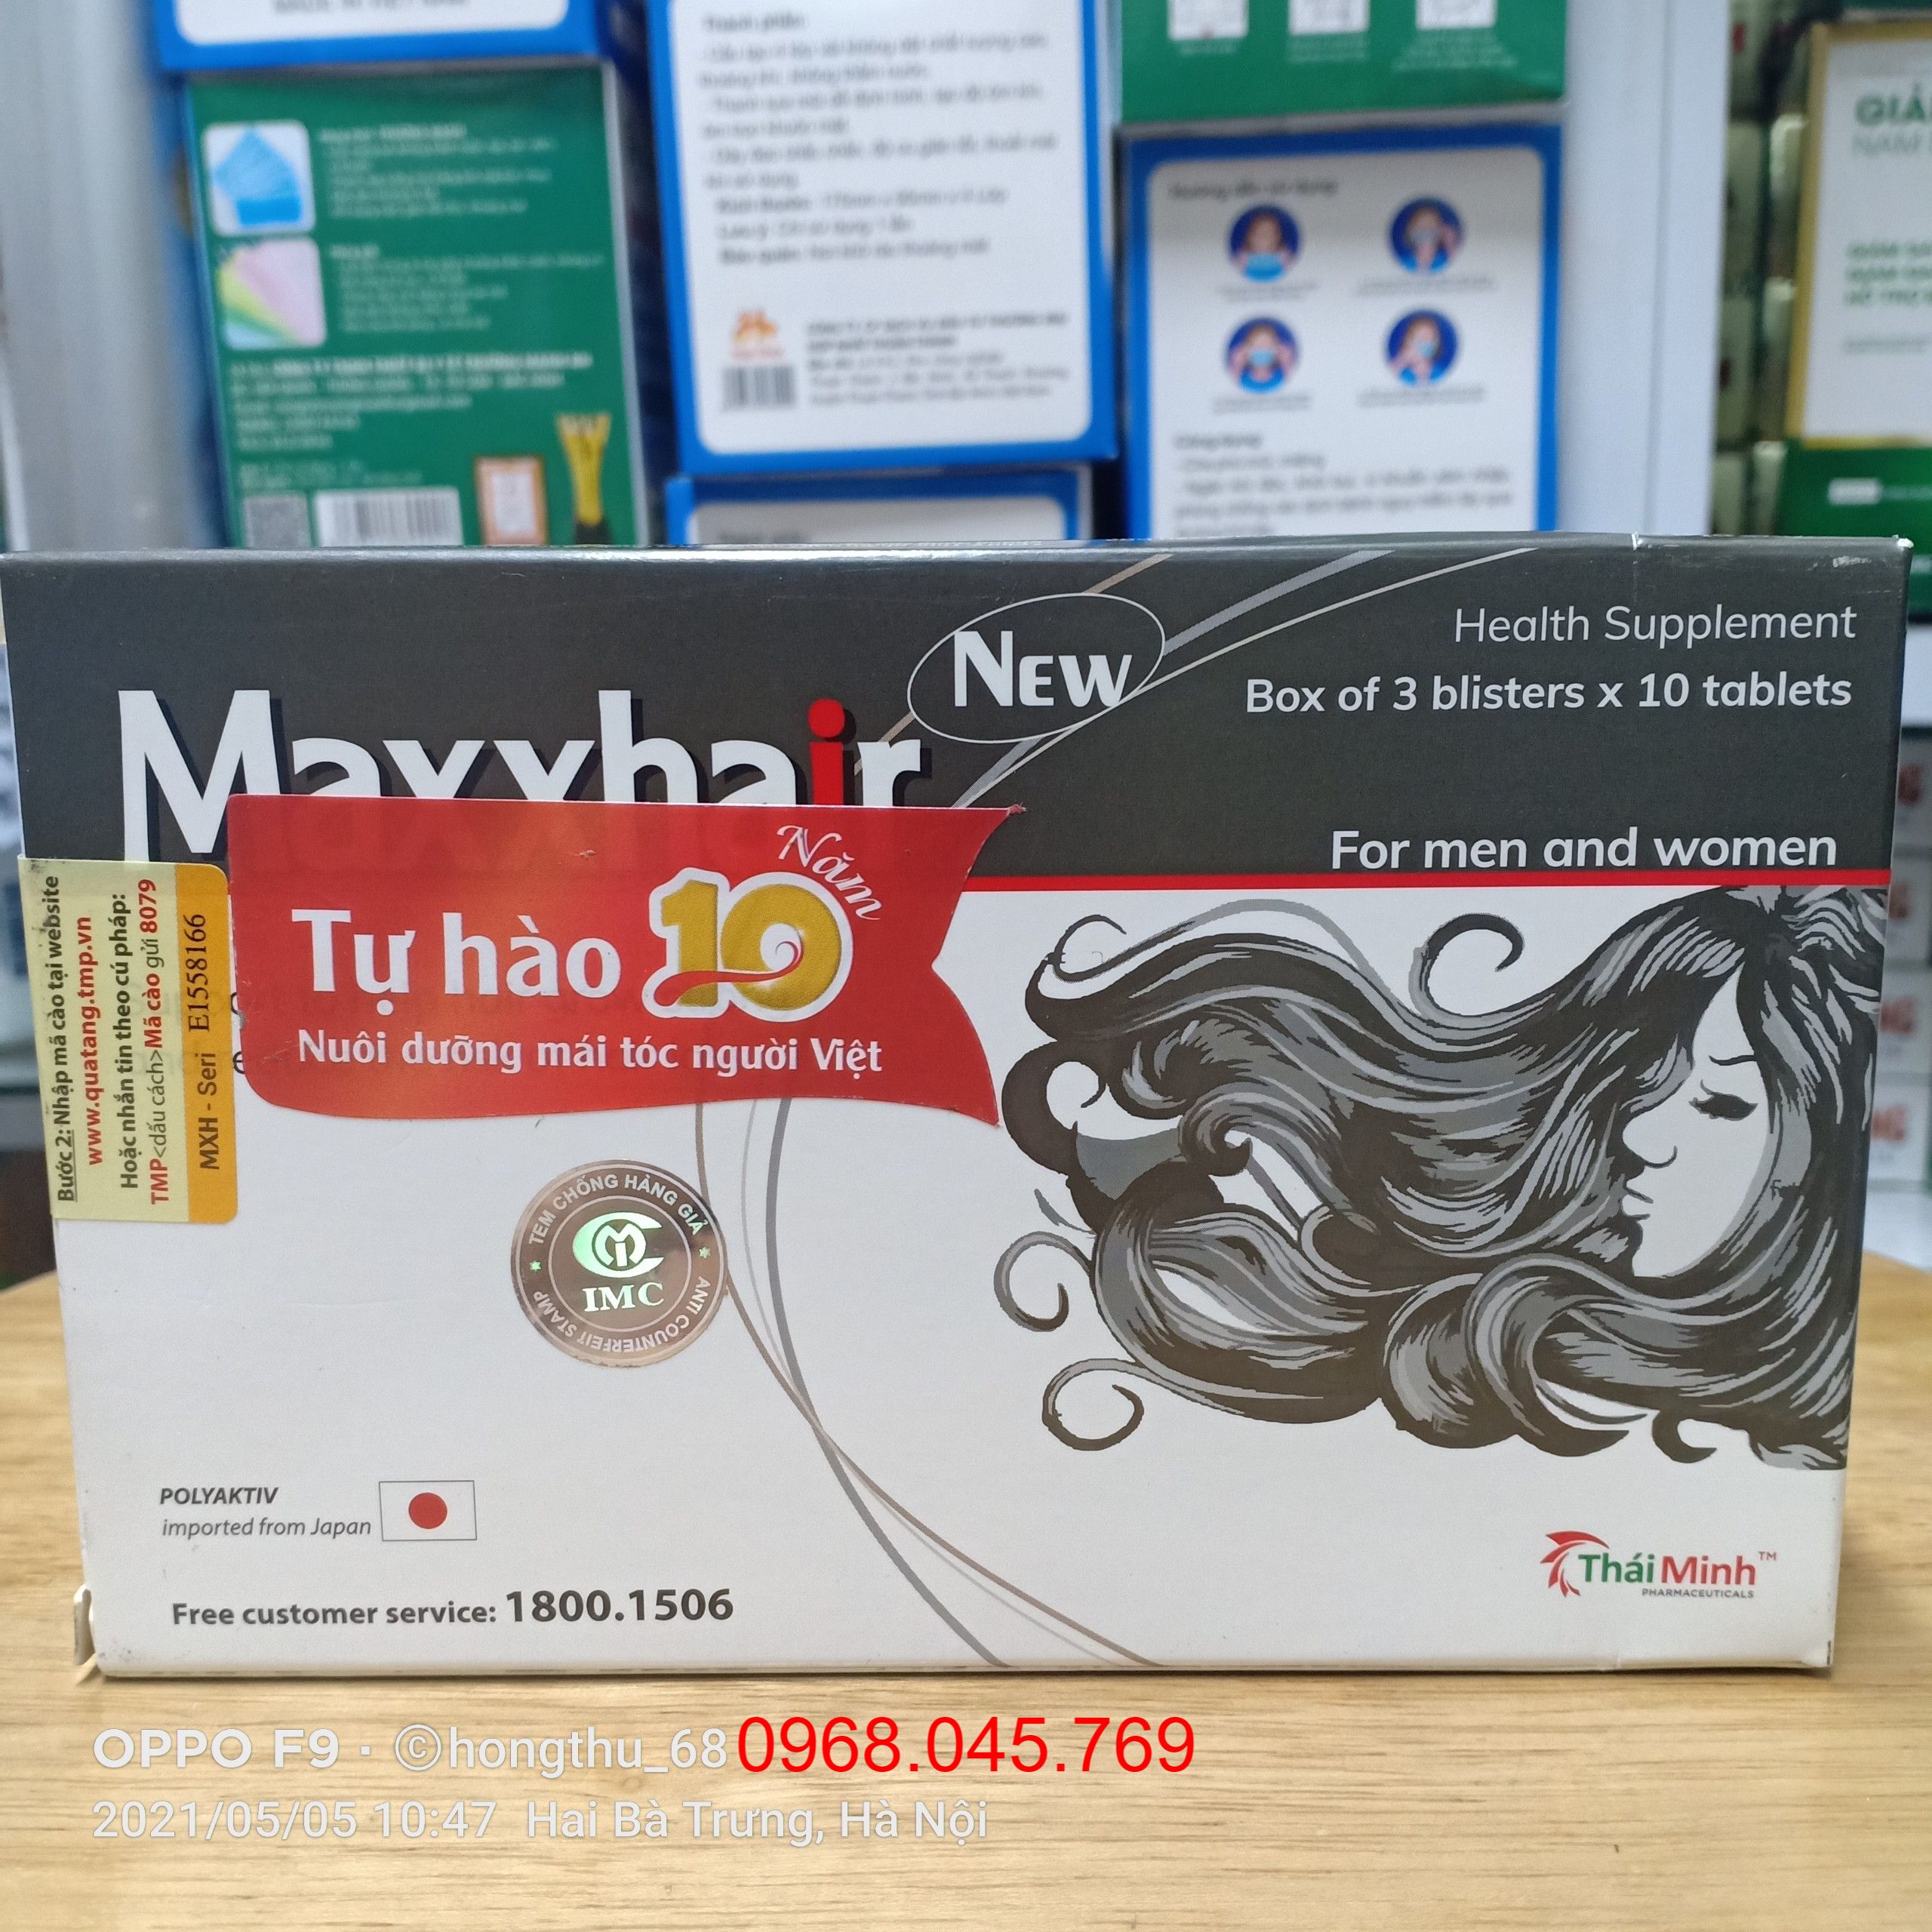 Maxxhair new giúp mọc tóc ngăn ngừa rụng tóc